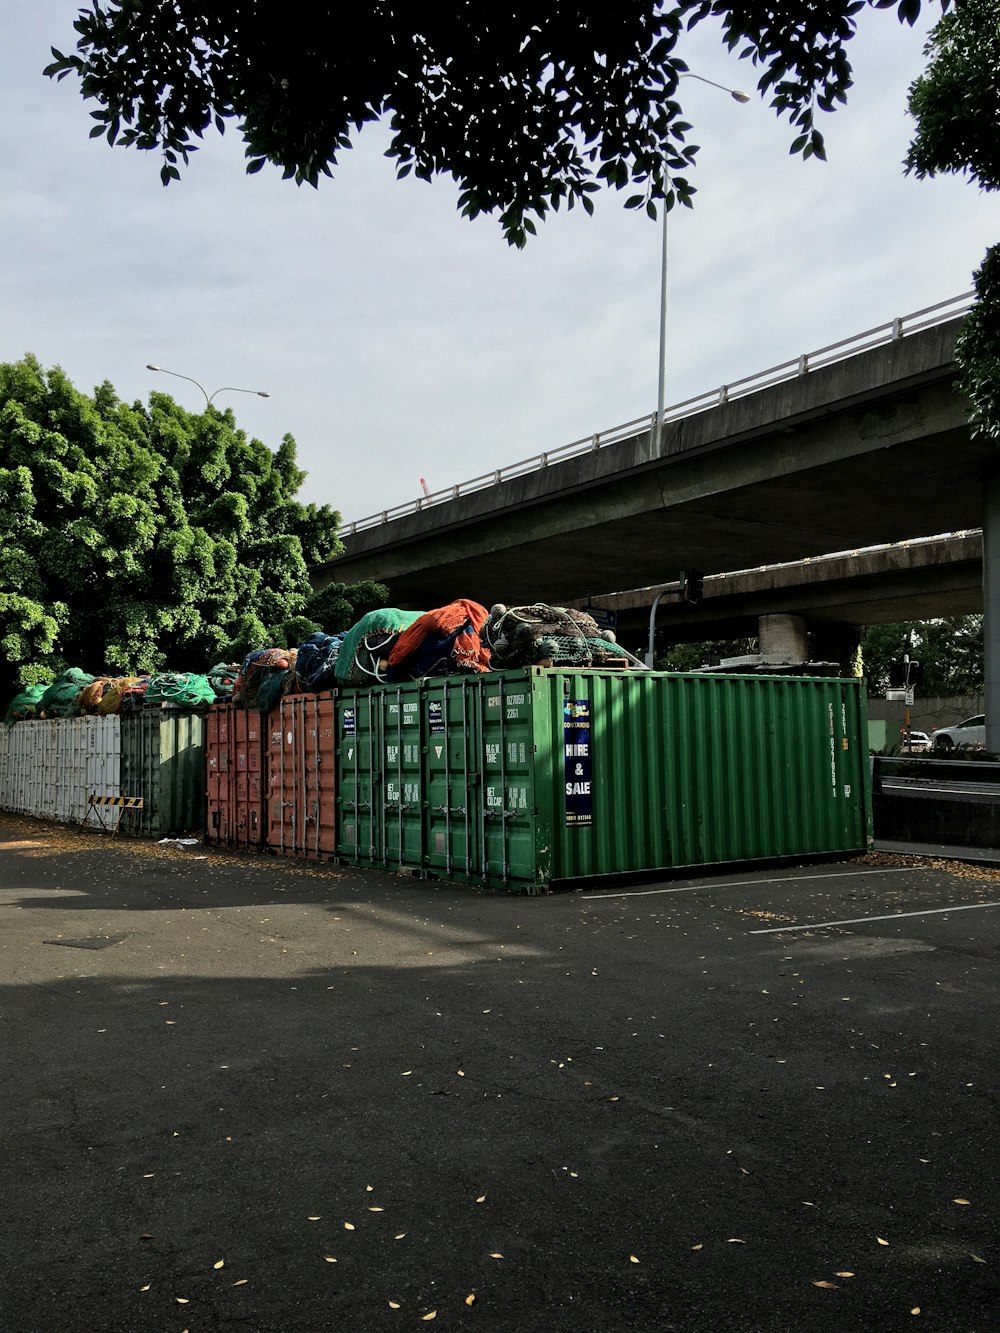 bidoni della spazzatura verdi sul marciapiede durante il giorno